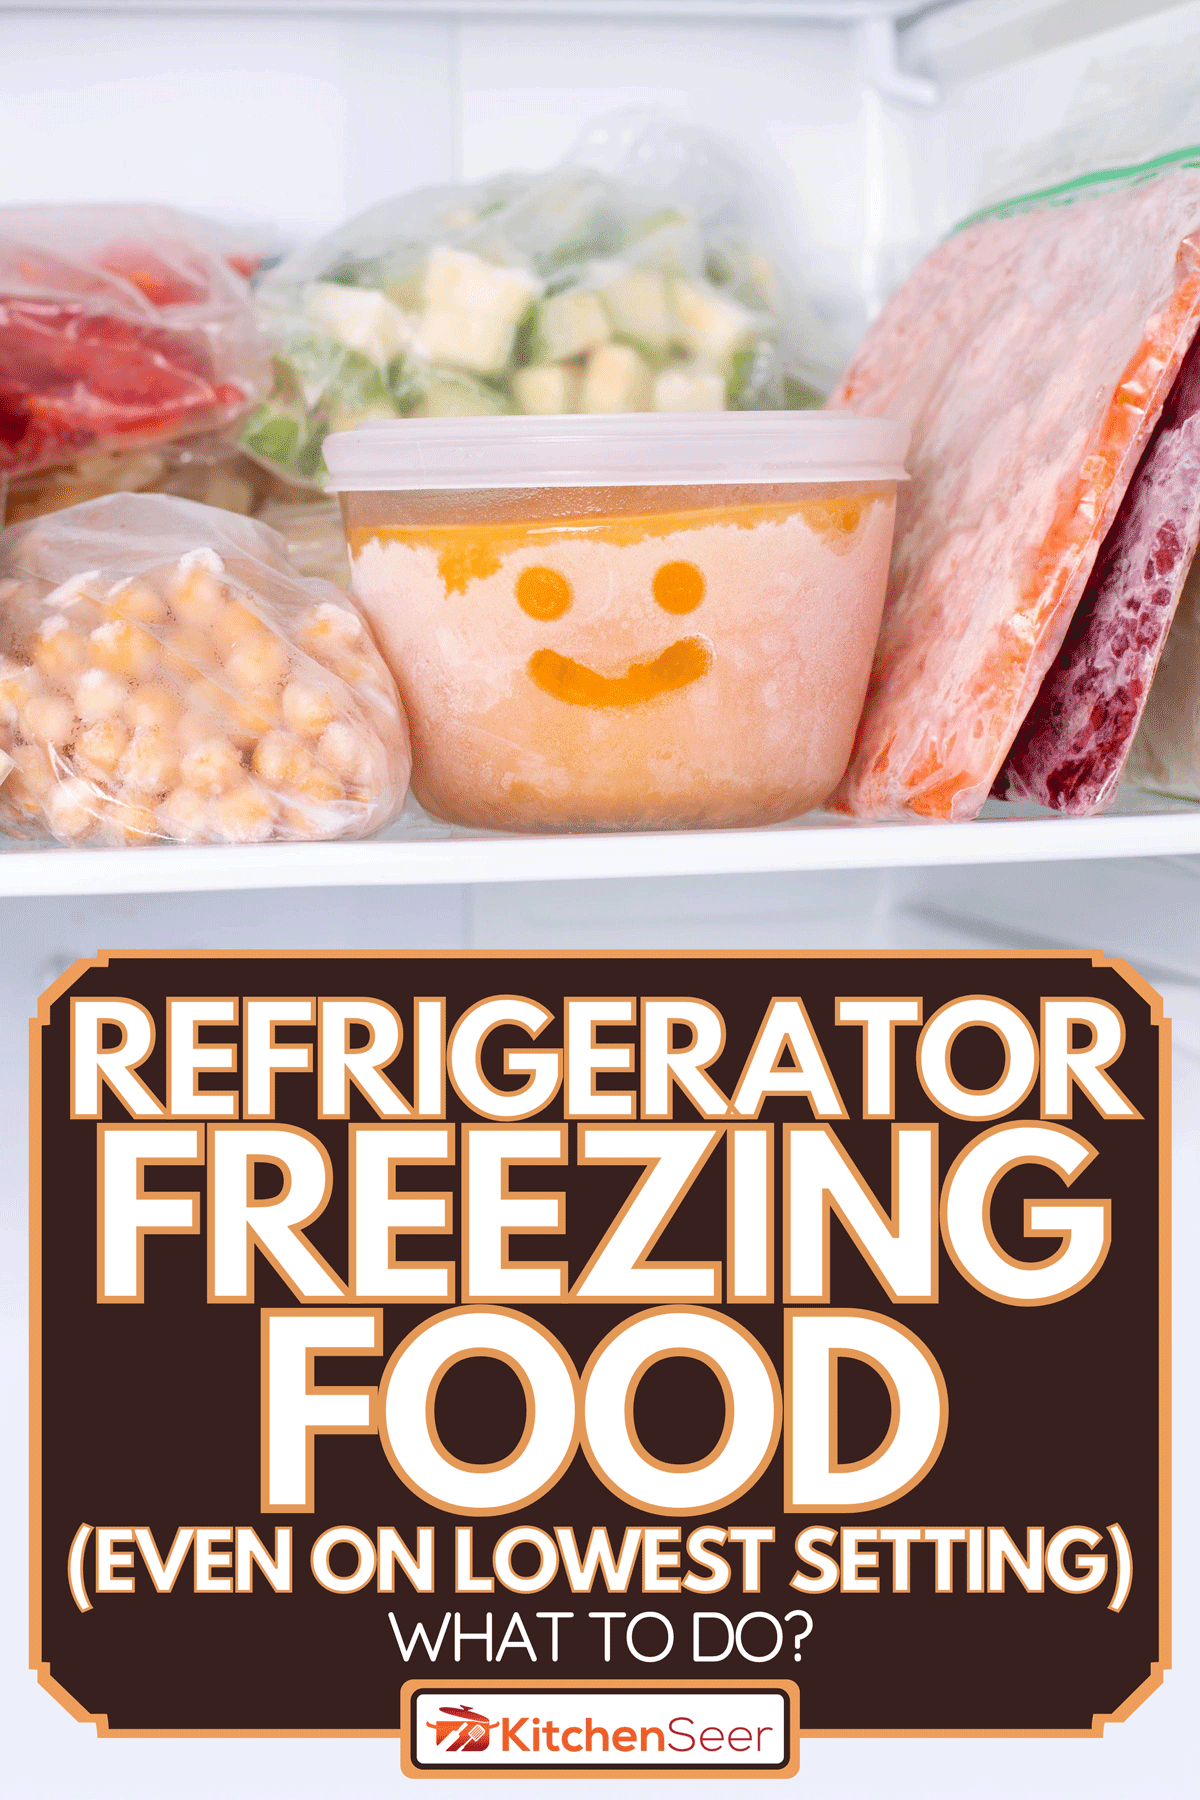 冷冻食品在冰箱，冰箱冷冻食品(即使在最低设置)-怎么办?